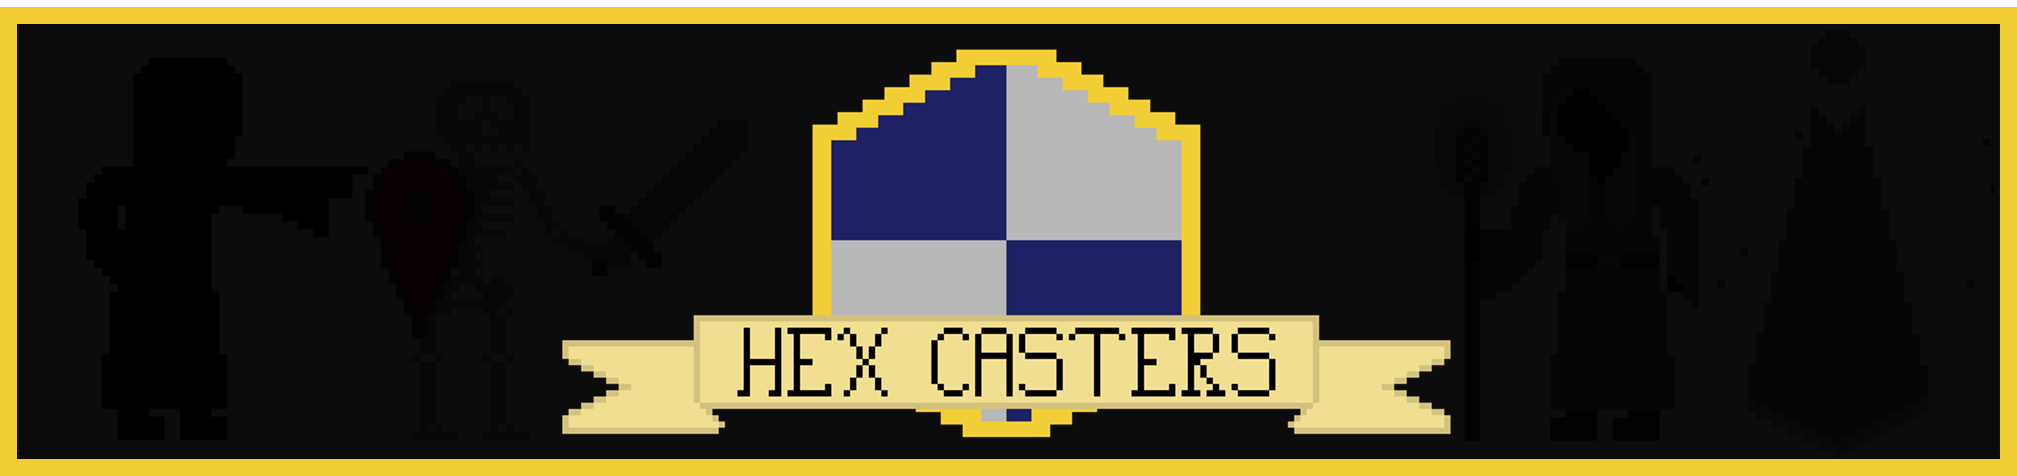 HexCasters